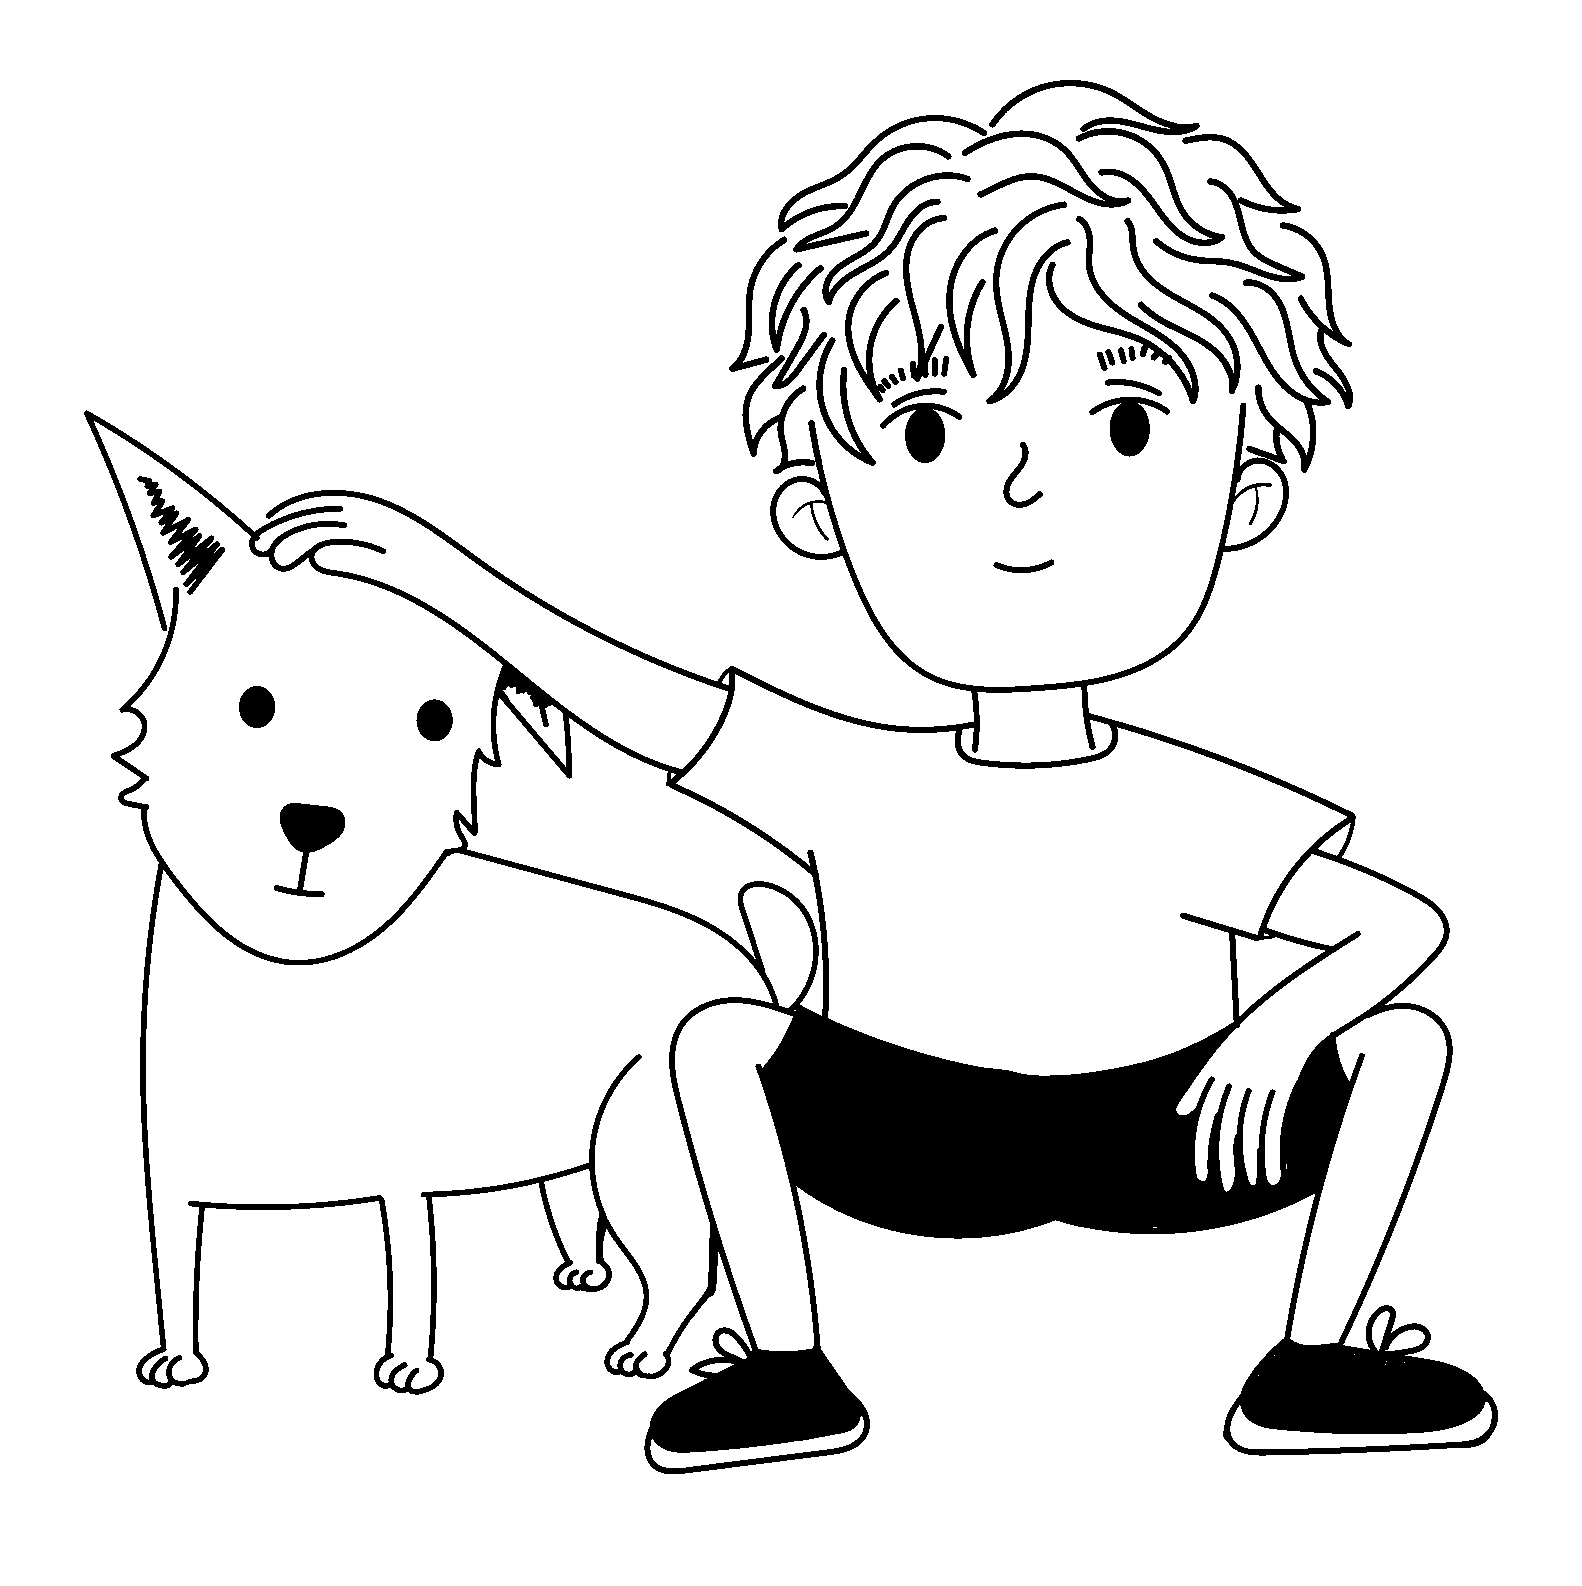 Página para colorear de niño acariciando a su perro estilo de dibujos animados